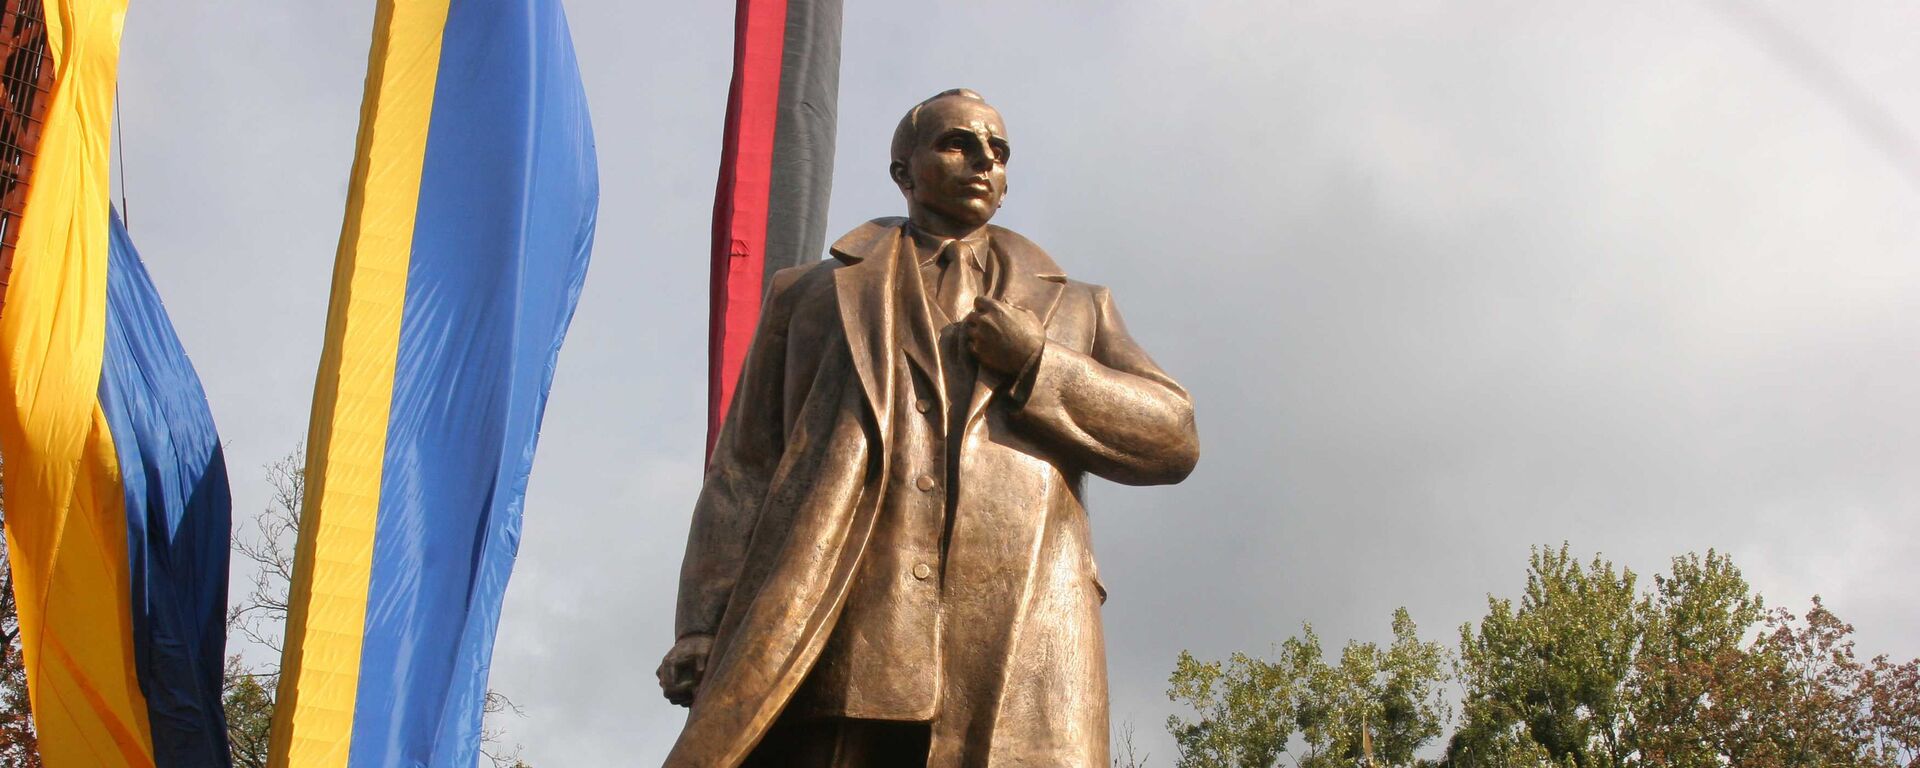 Inauguração do monumento a Stepan Bandera, líder ideológico da Organização dos Nacionalistas Ucranianos, em Lviv (Ucrânia) - Sputnik Brasil, 1920, 13.07.2022